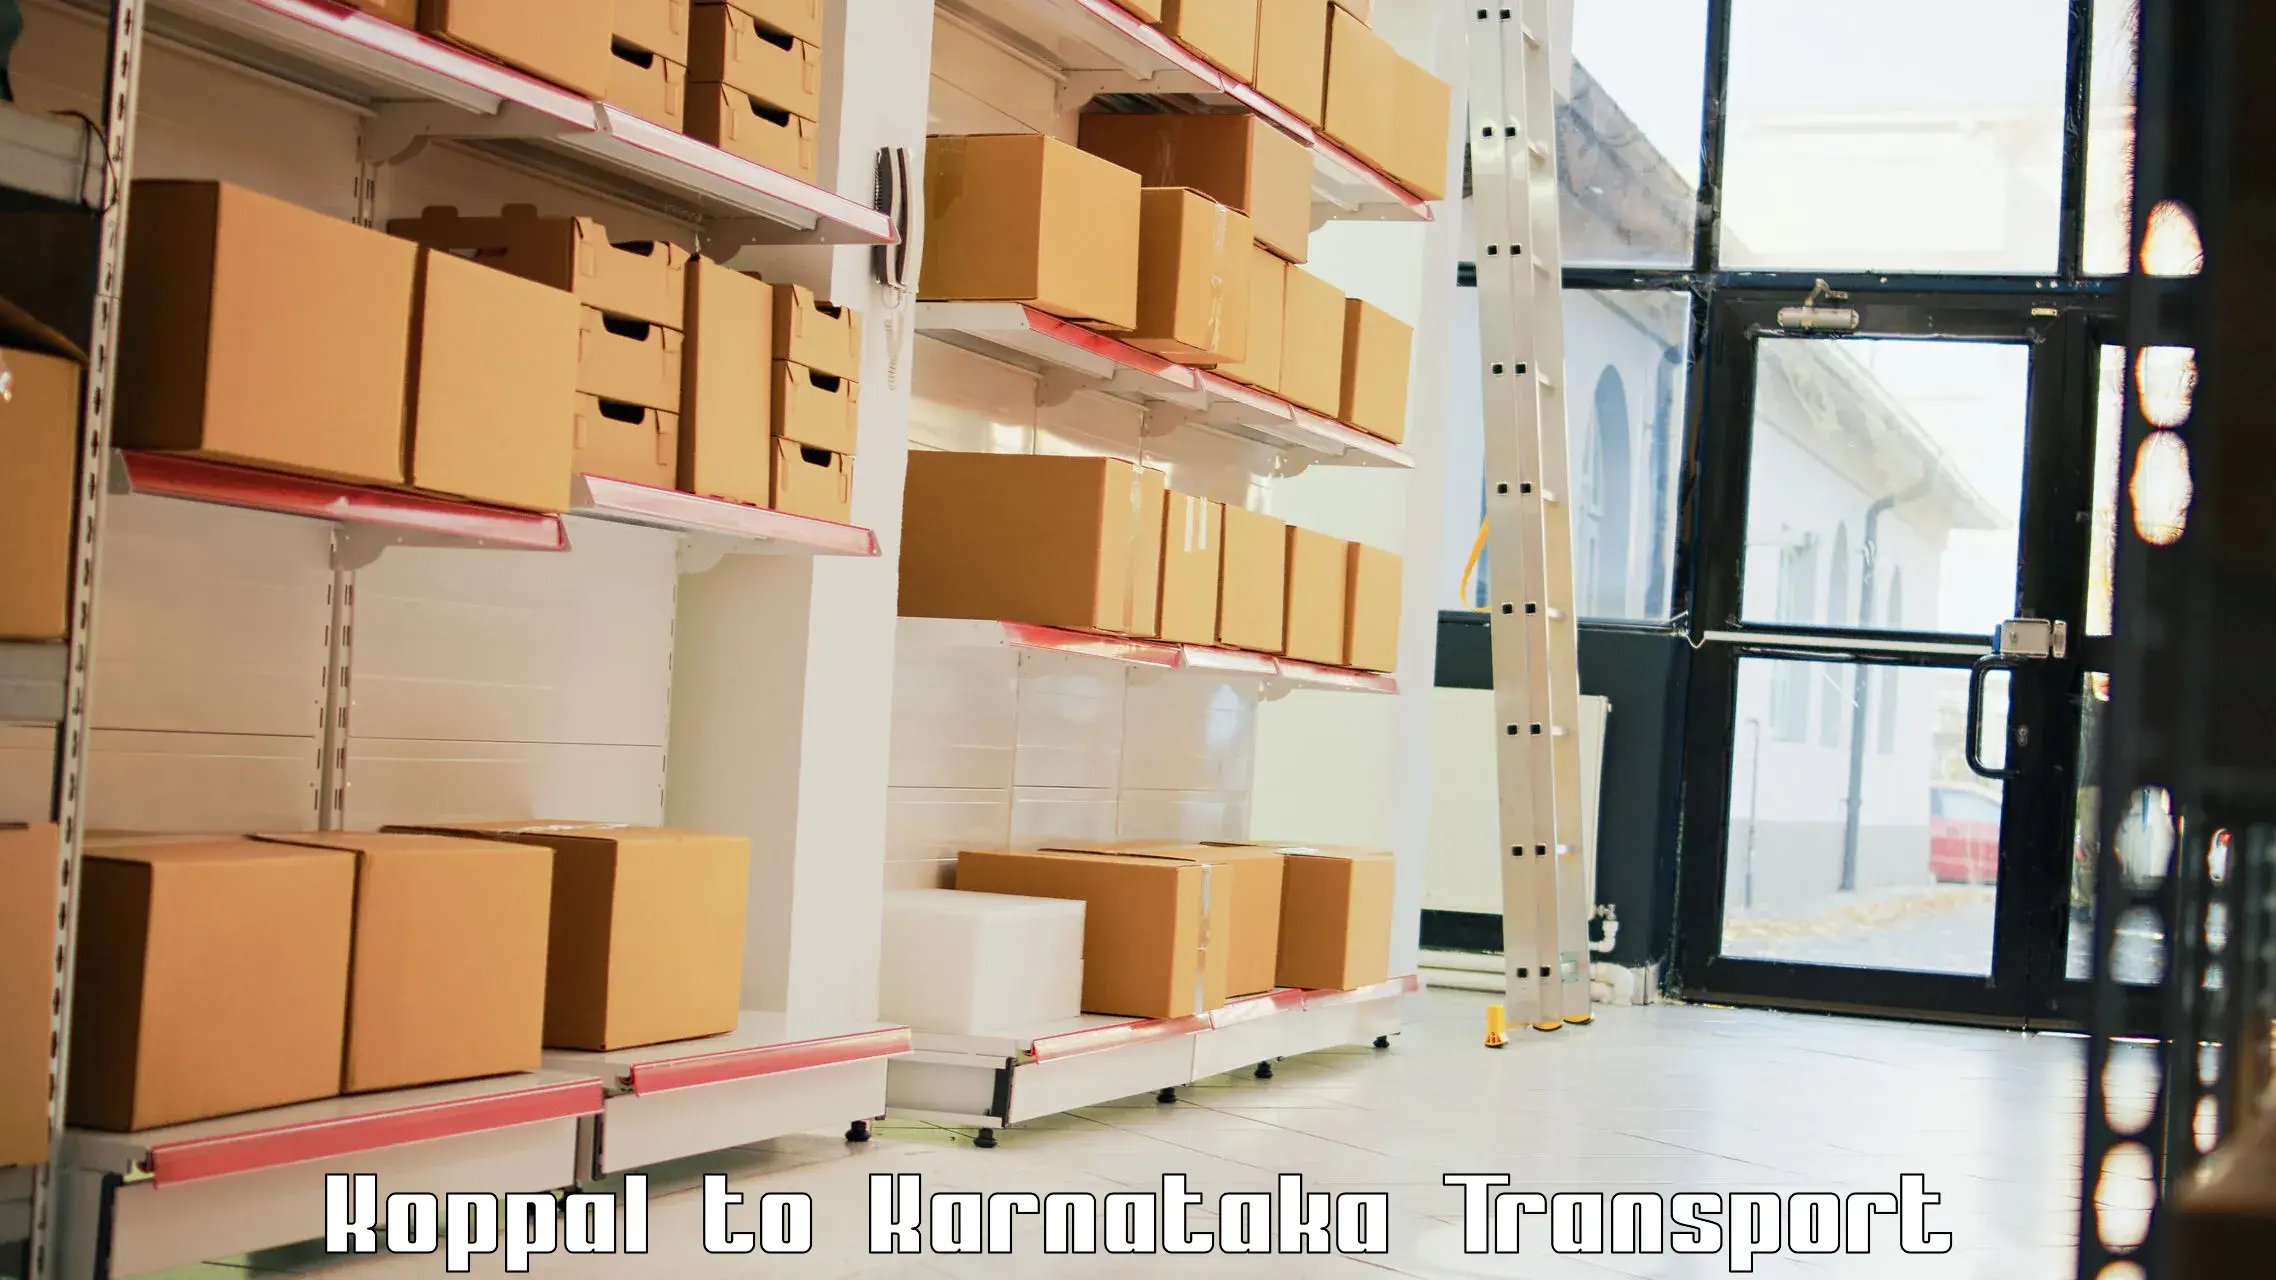 Shipping services Koppal to Tikota